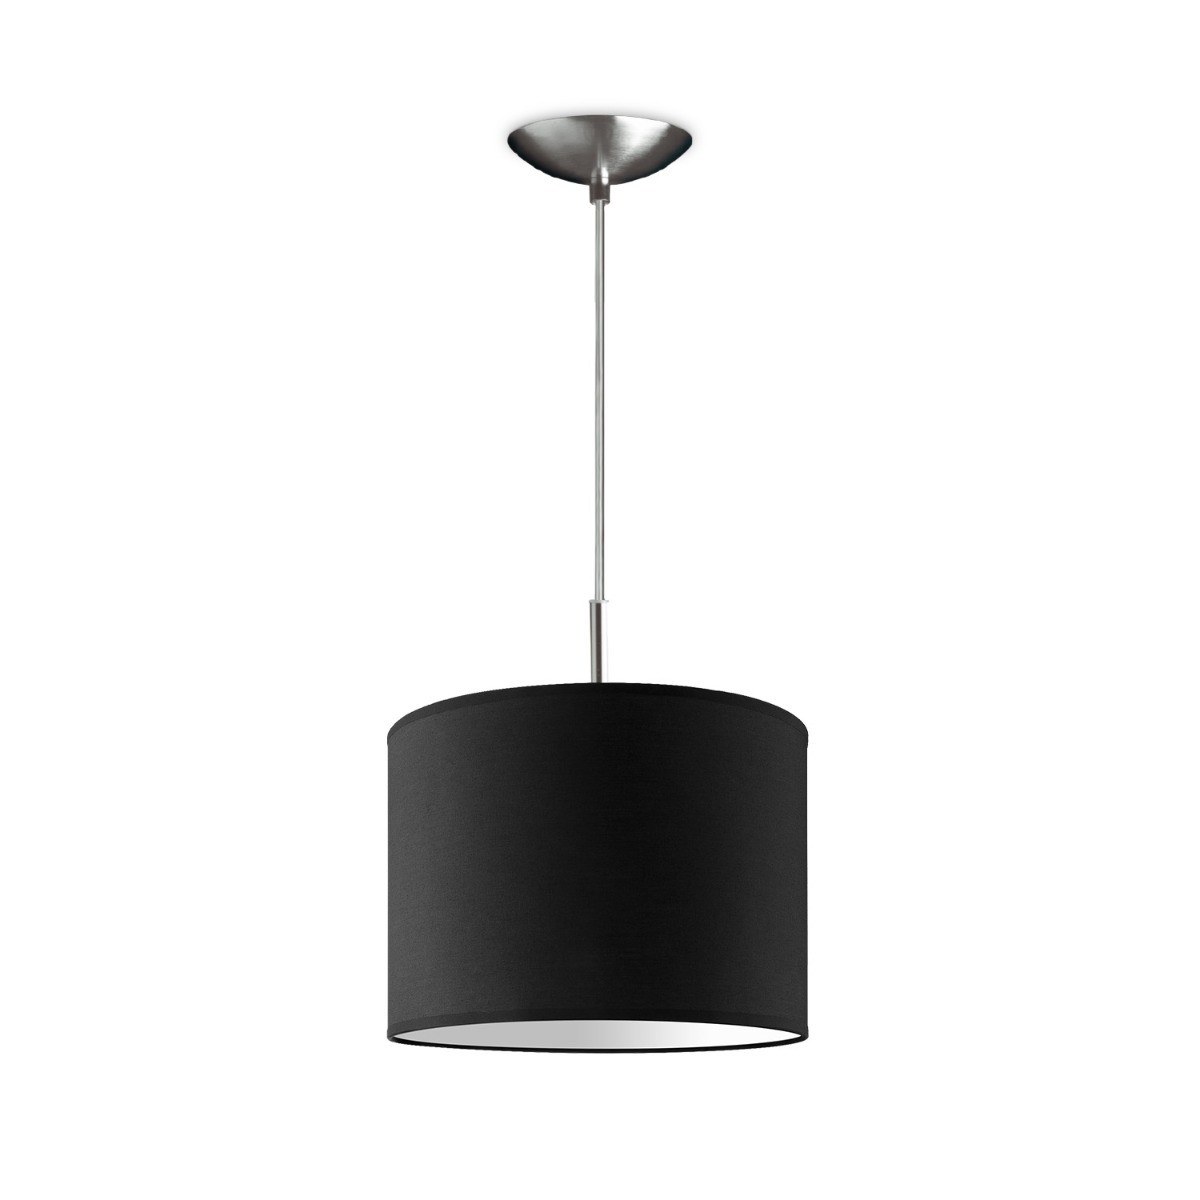 Light depot - hanglamp tube deluxe bling Ø 25 cm - zwart - Outlet